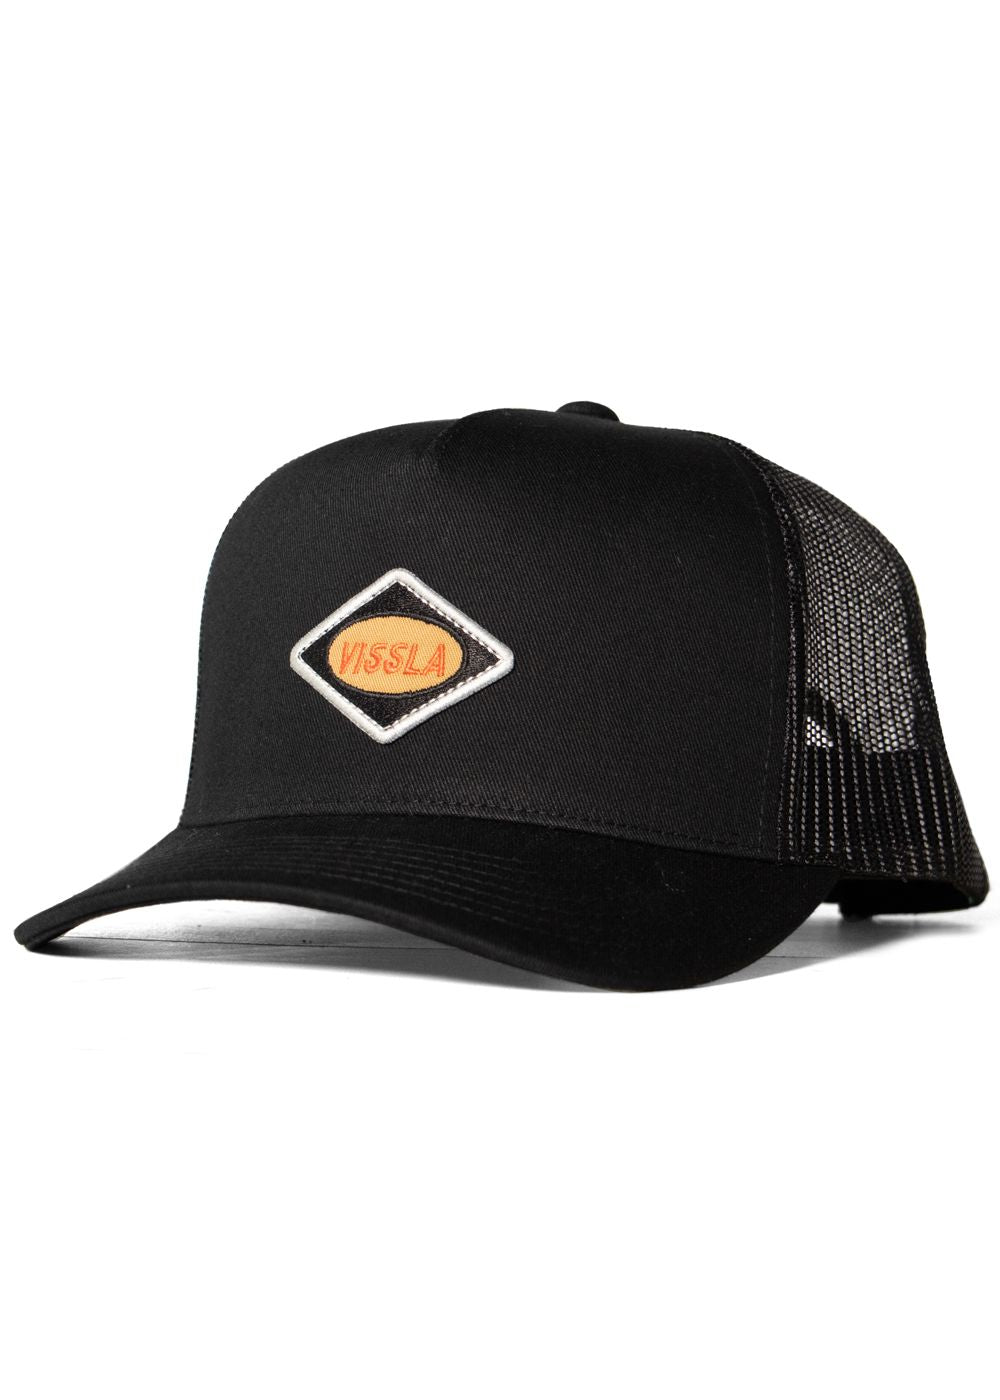 Vissla Solid Sets Eco Trucker Hat- black